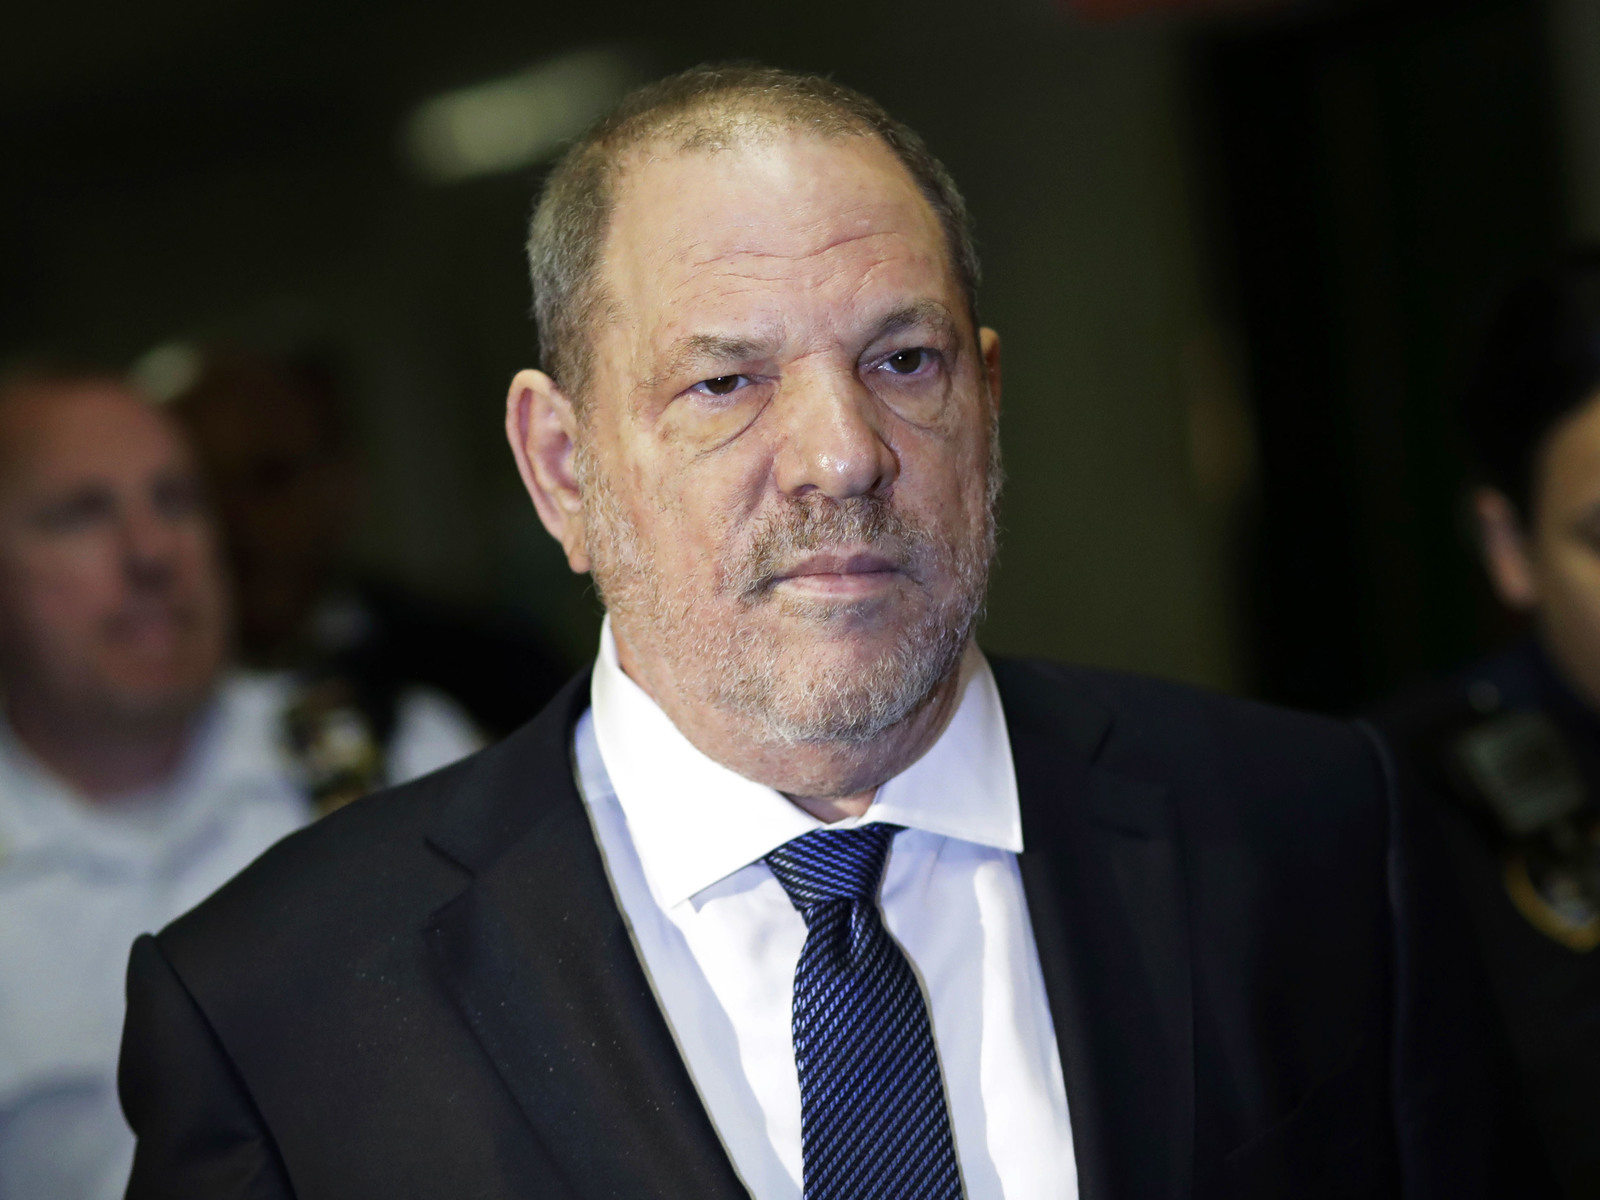 Acusado. Más de 70 mujeres han acusado a Weinstein de conducta sexual inapropiada, incluida violación y agresión. (ARCHIVO)